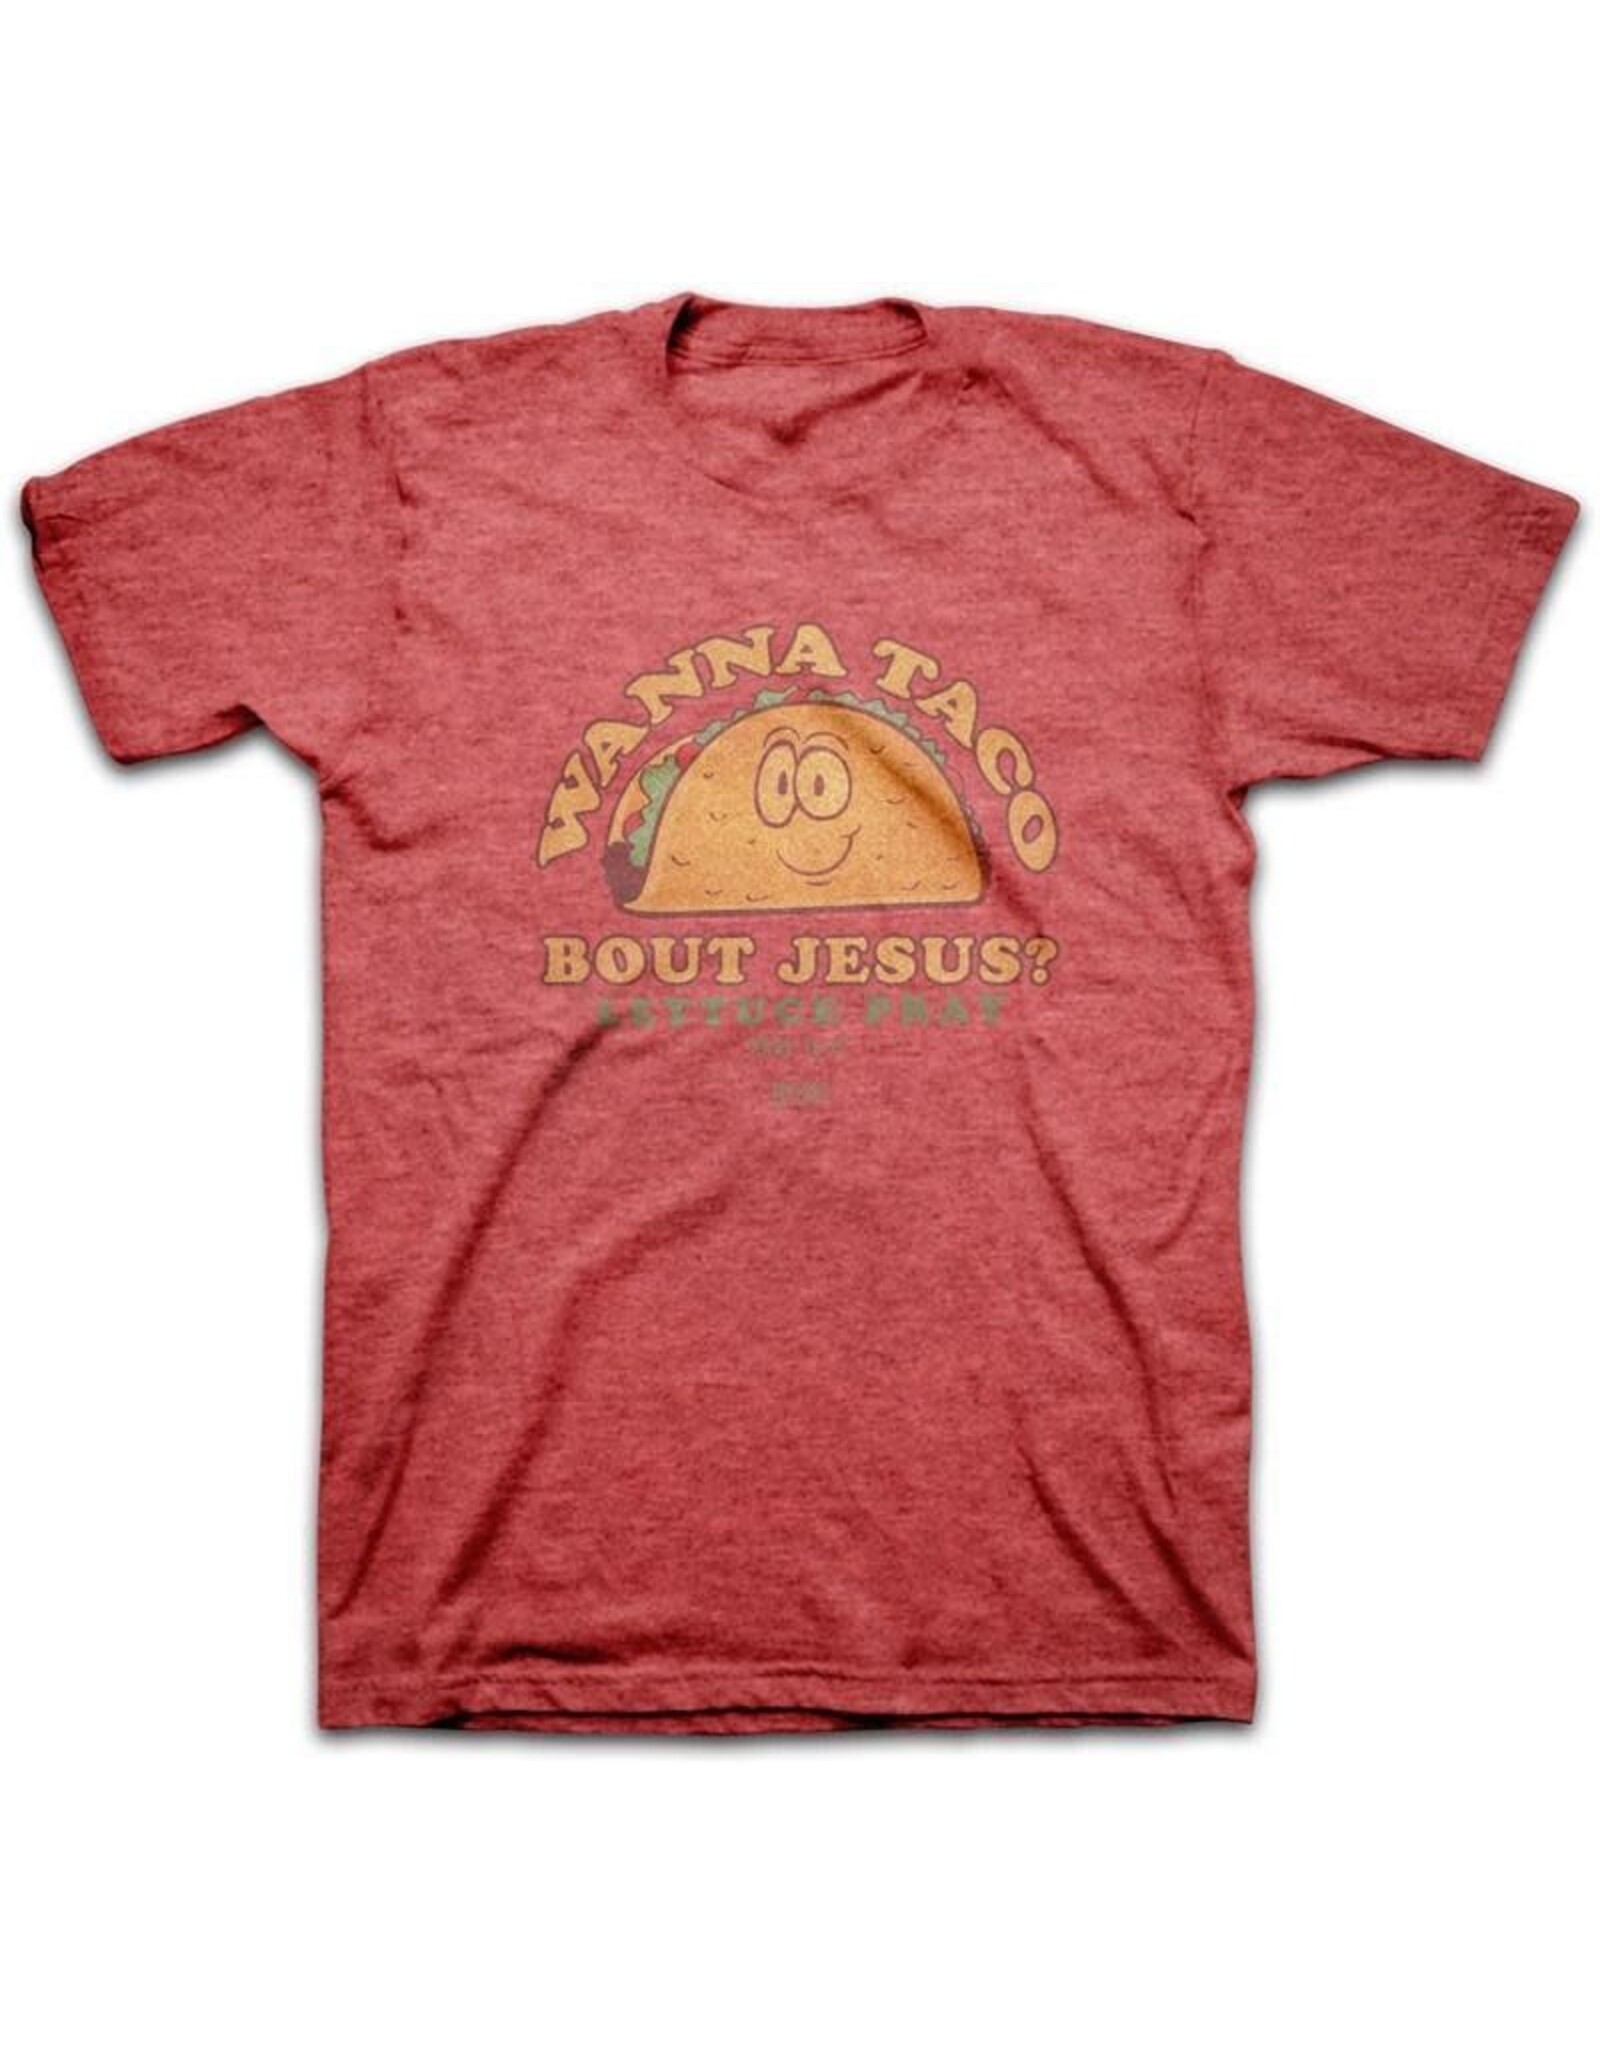 Kerusso Adult Shirt - Wanna Taco Bout Jesus